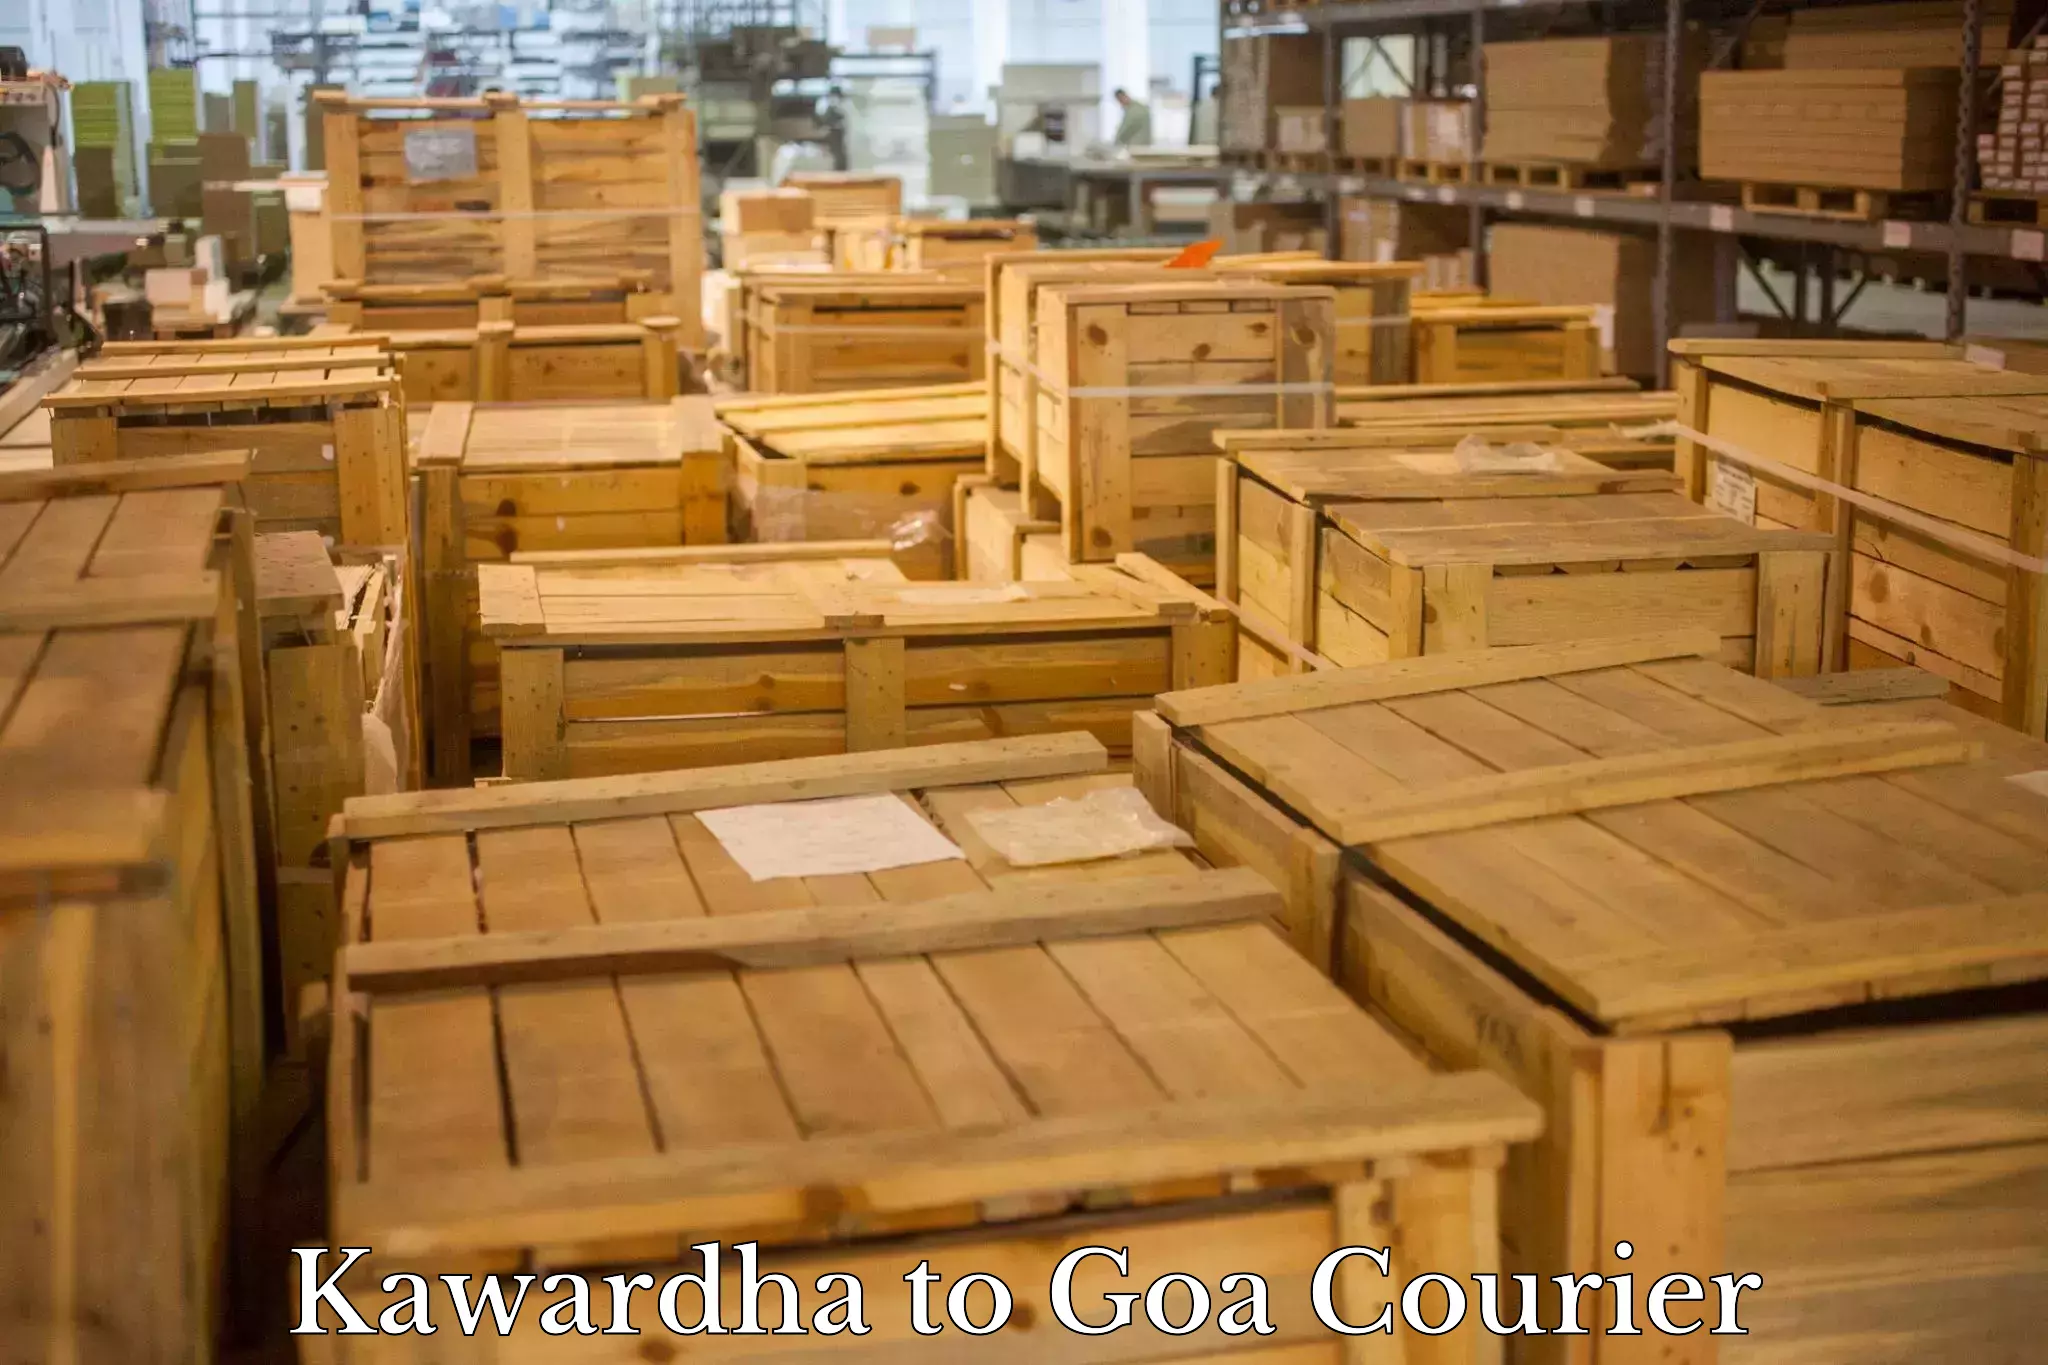 Cost-effective courier options Kawardha to IIT Goa